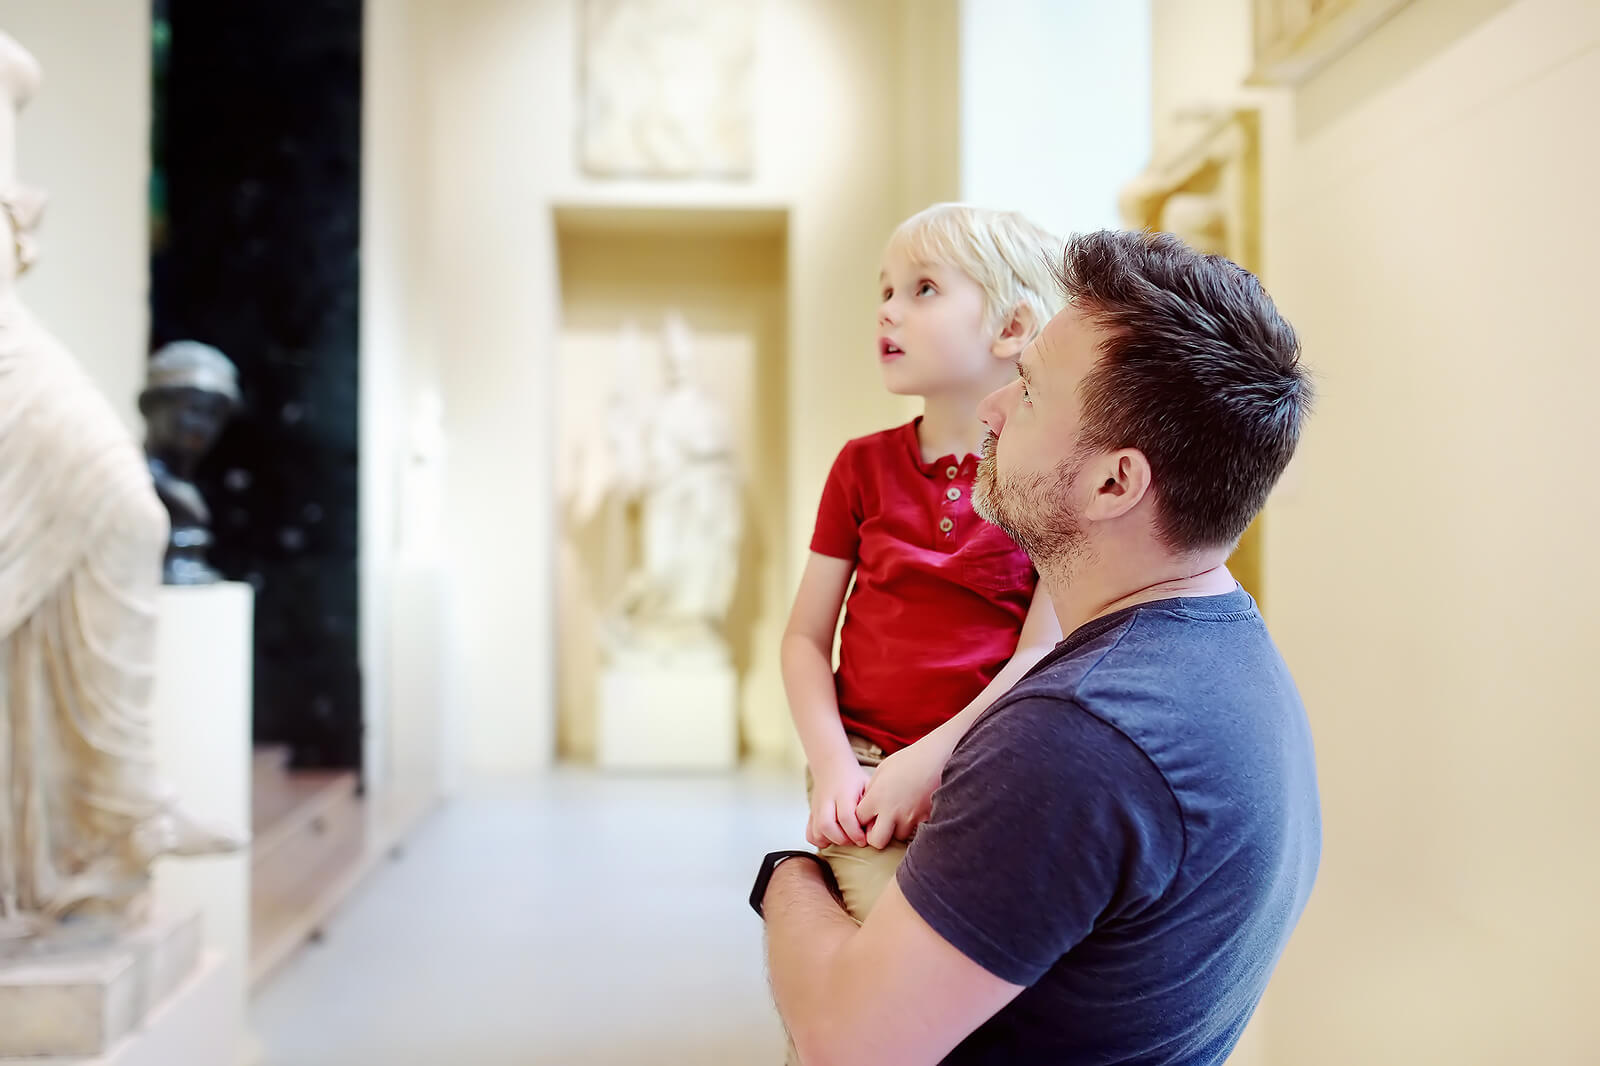 Pai com o filho em um museu, fruto da coparentalidade.